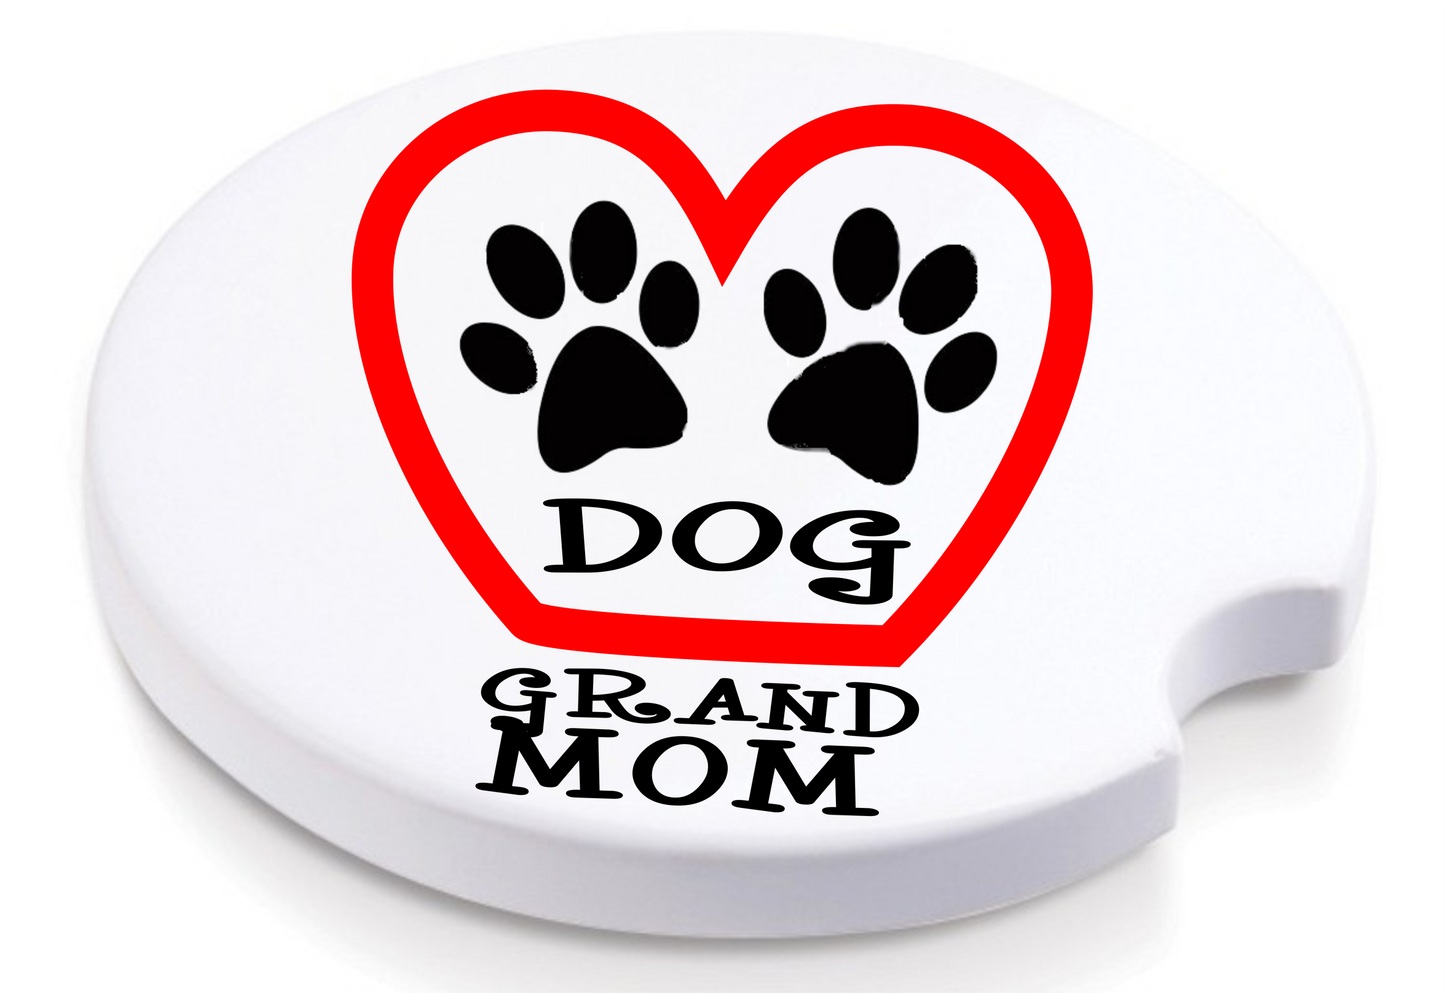 Dog Grand Mom